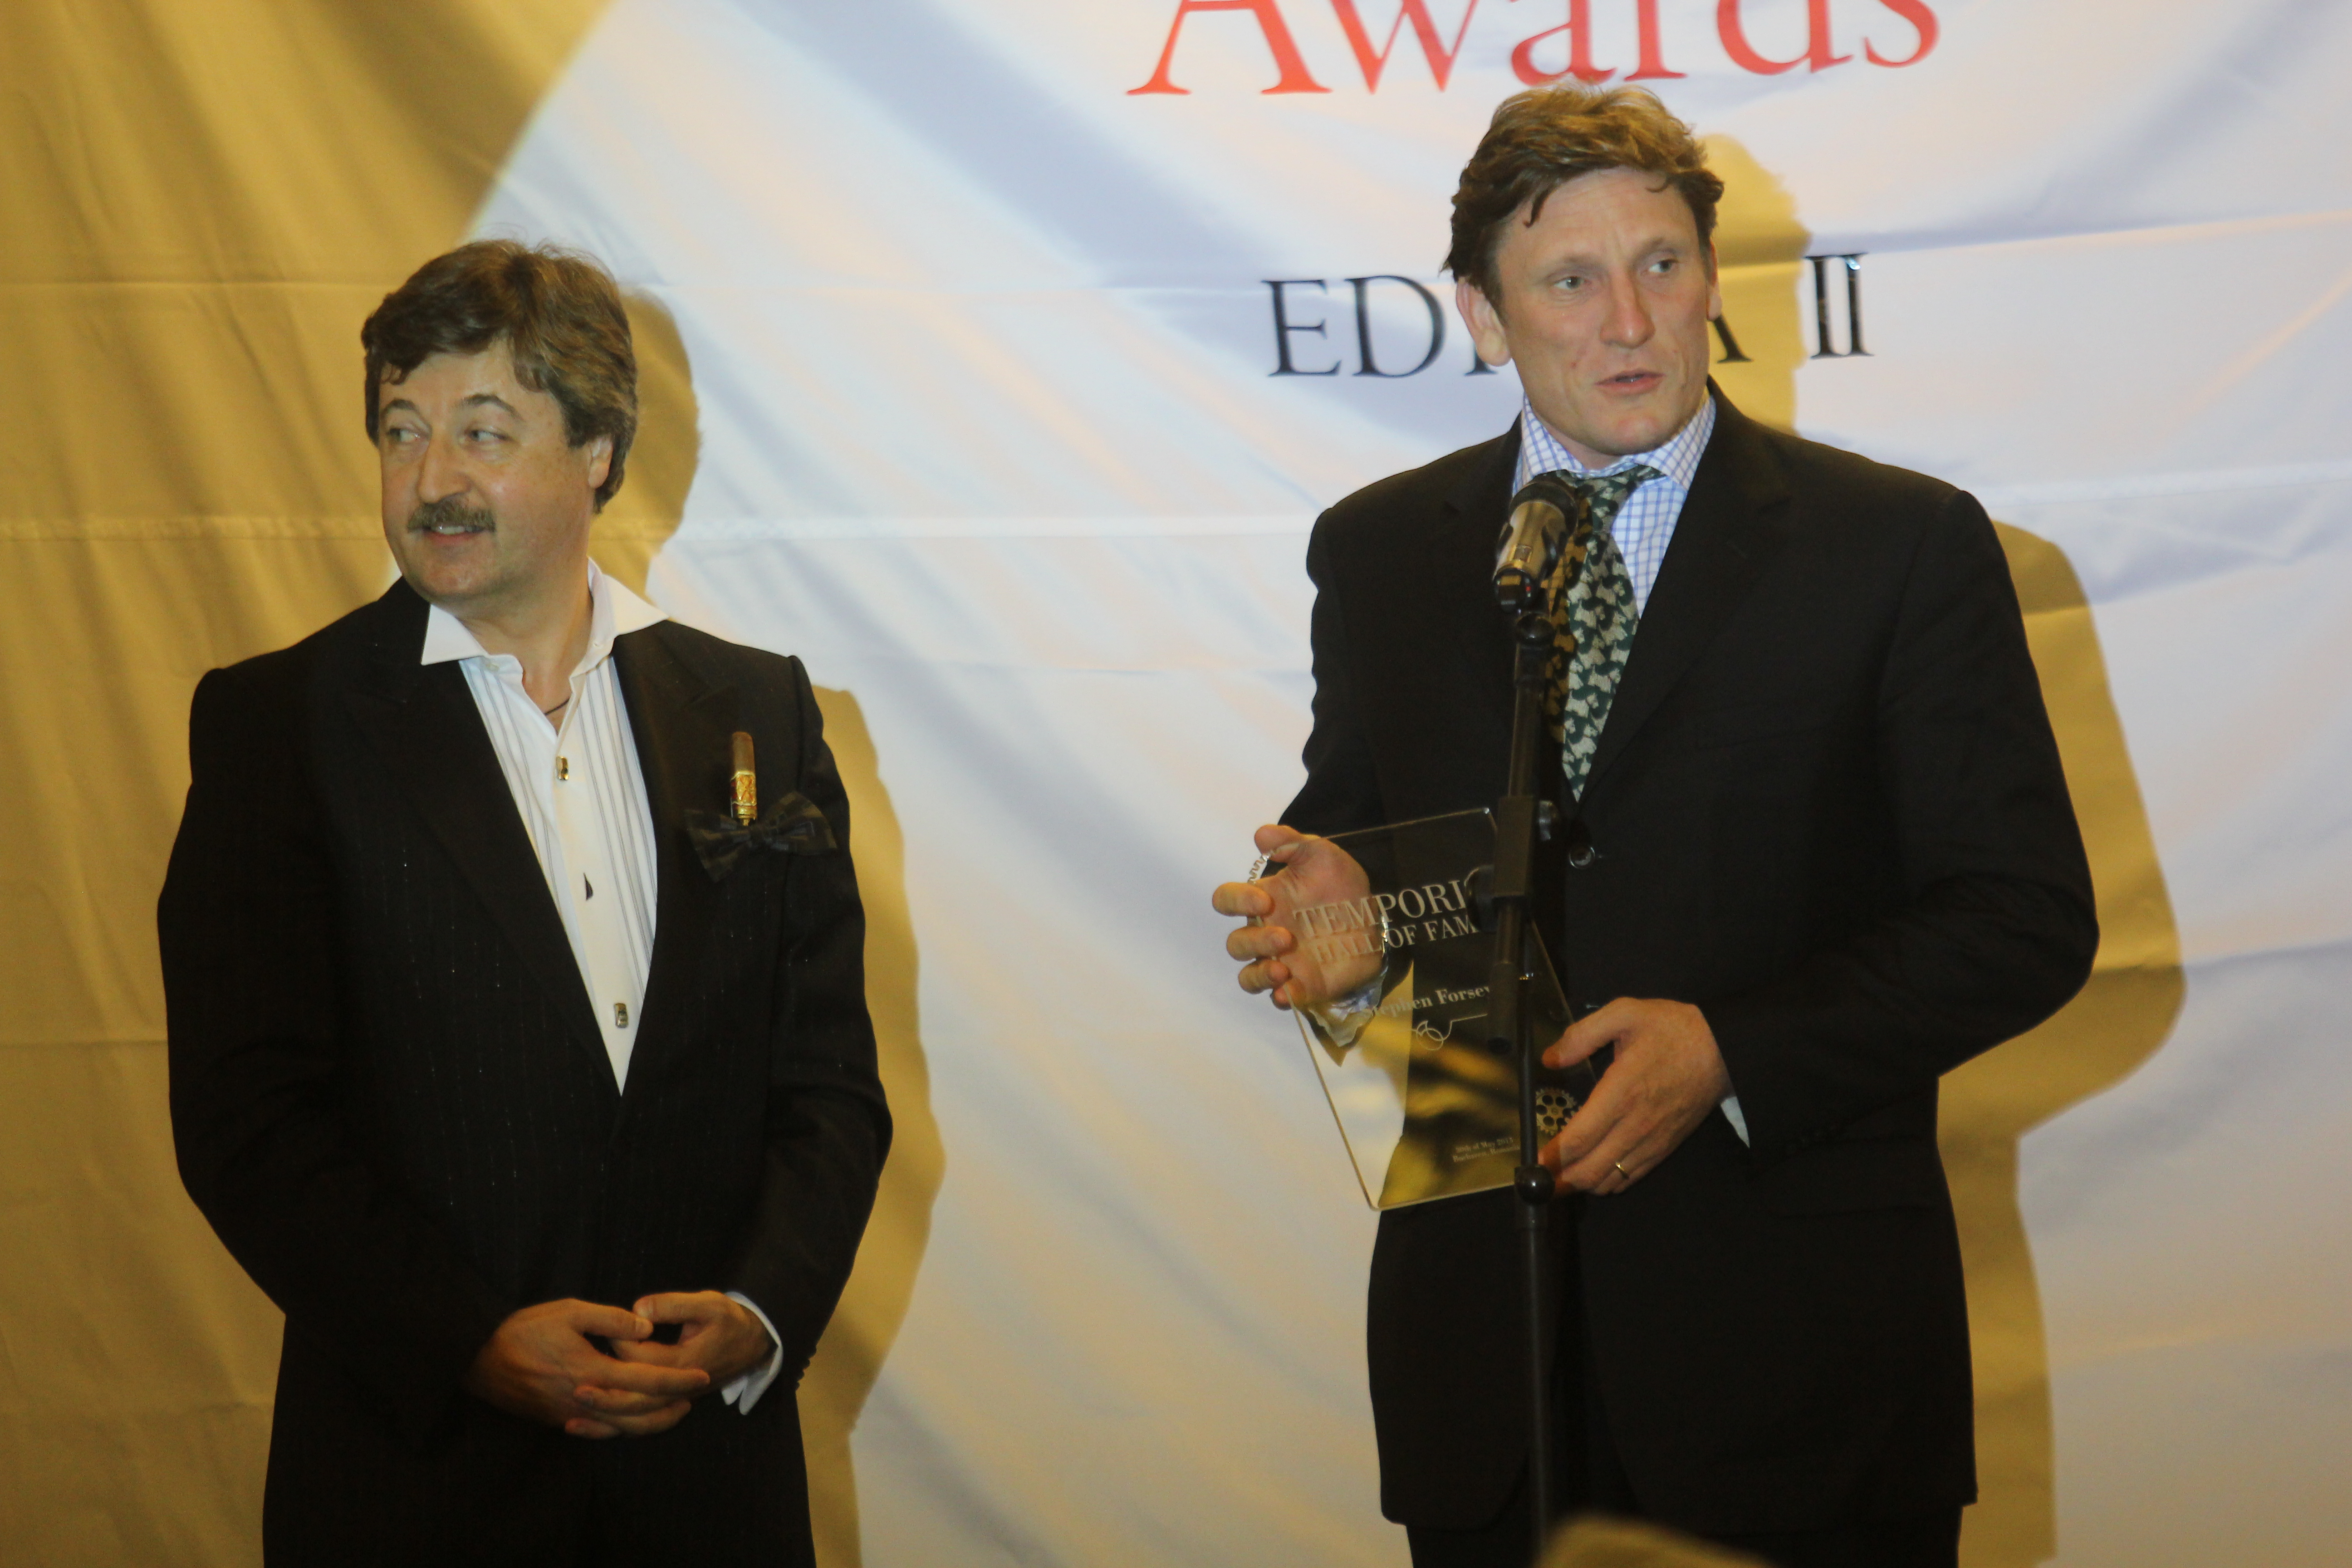 Faimosul ceasornicar (dreapta) a fost premiat la Bucuresti in cadrul galei organizate de Dan Vardie